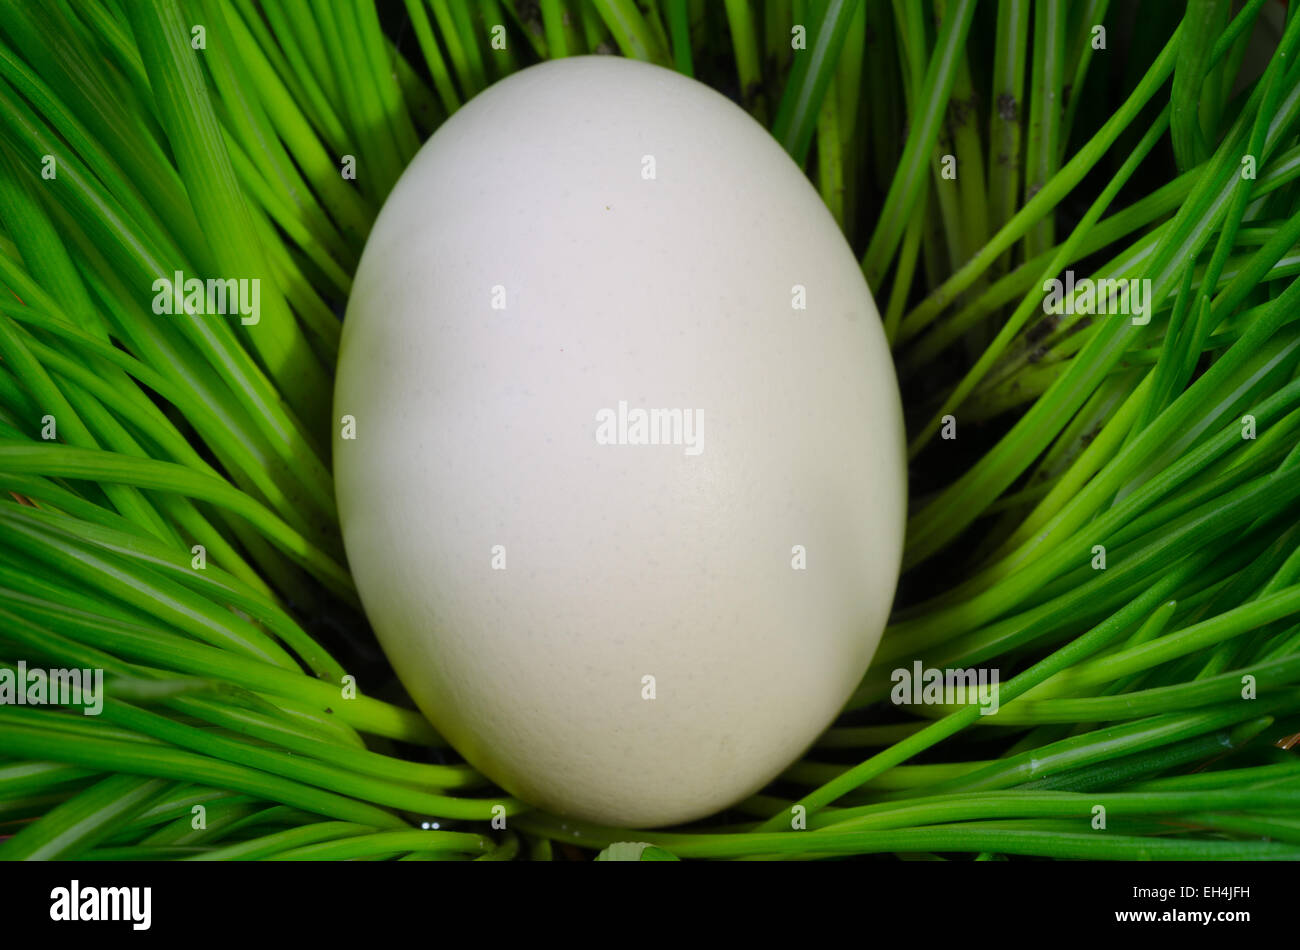 white easter egg in green grass Stock Photo